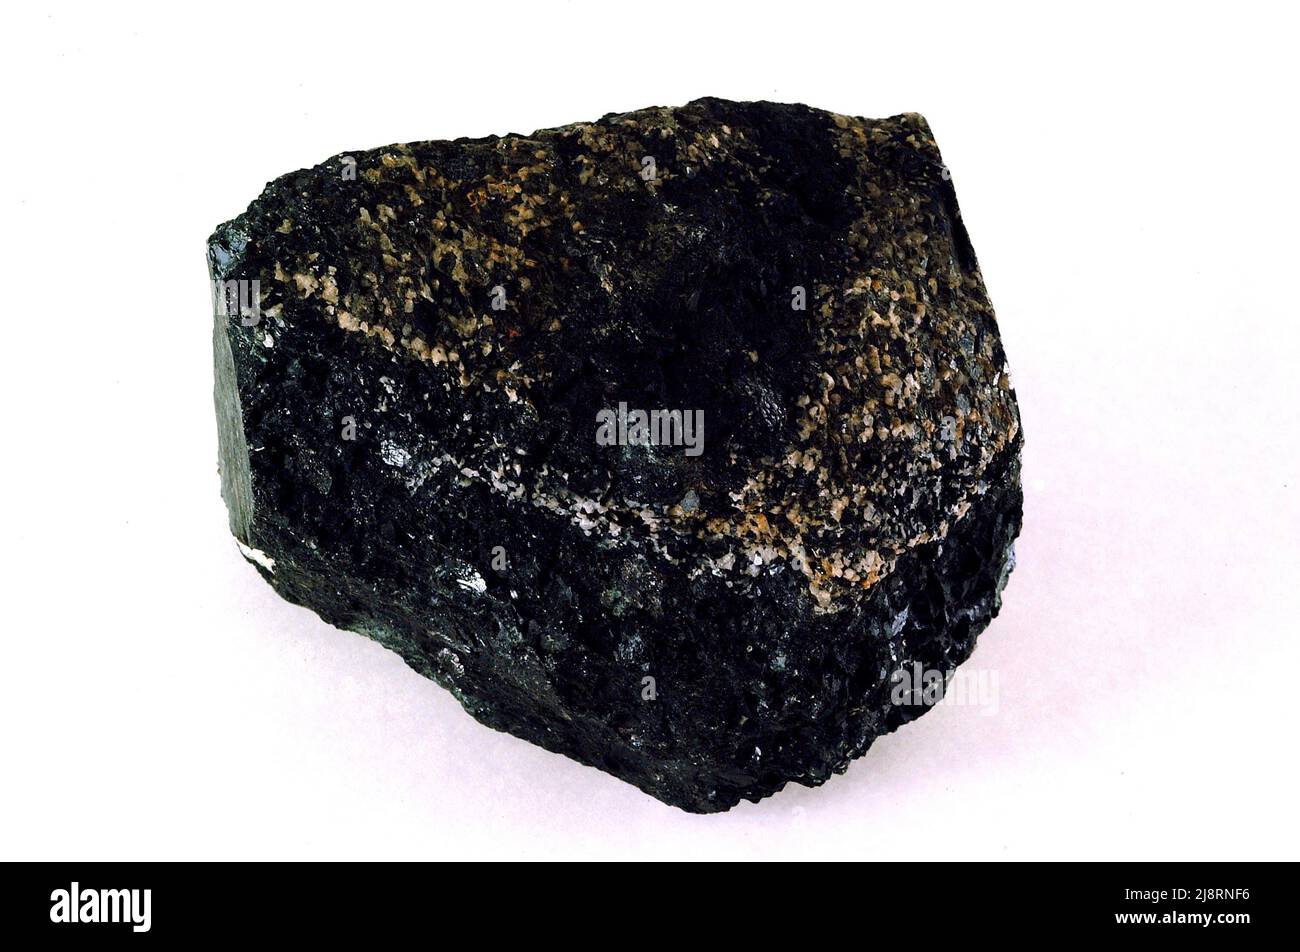 Jeffersonite (Aegirin), Franklin, New Jersey. Jeffersonit ist kein Mineralname. Es handelt sich vielmehr um einen Begriff, der manchmal verwendet wird, um eine Mangan-Zink-Sorte von Clinopyroxen zu beschreiben, die mit dem Mineral Aegirin verwandt ist. Diese 8 cm breite Probe aus Franklin, New Jersey, besteht fast ausschließlich aus schwarzem Pyroxen. Stockfoto